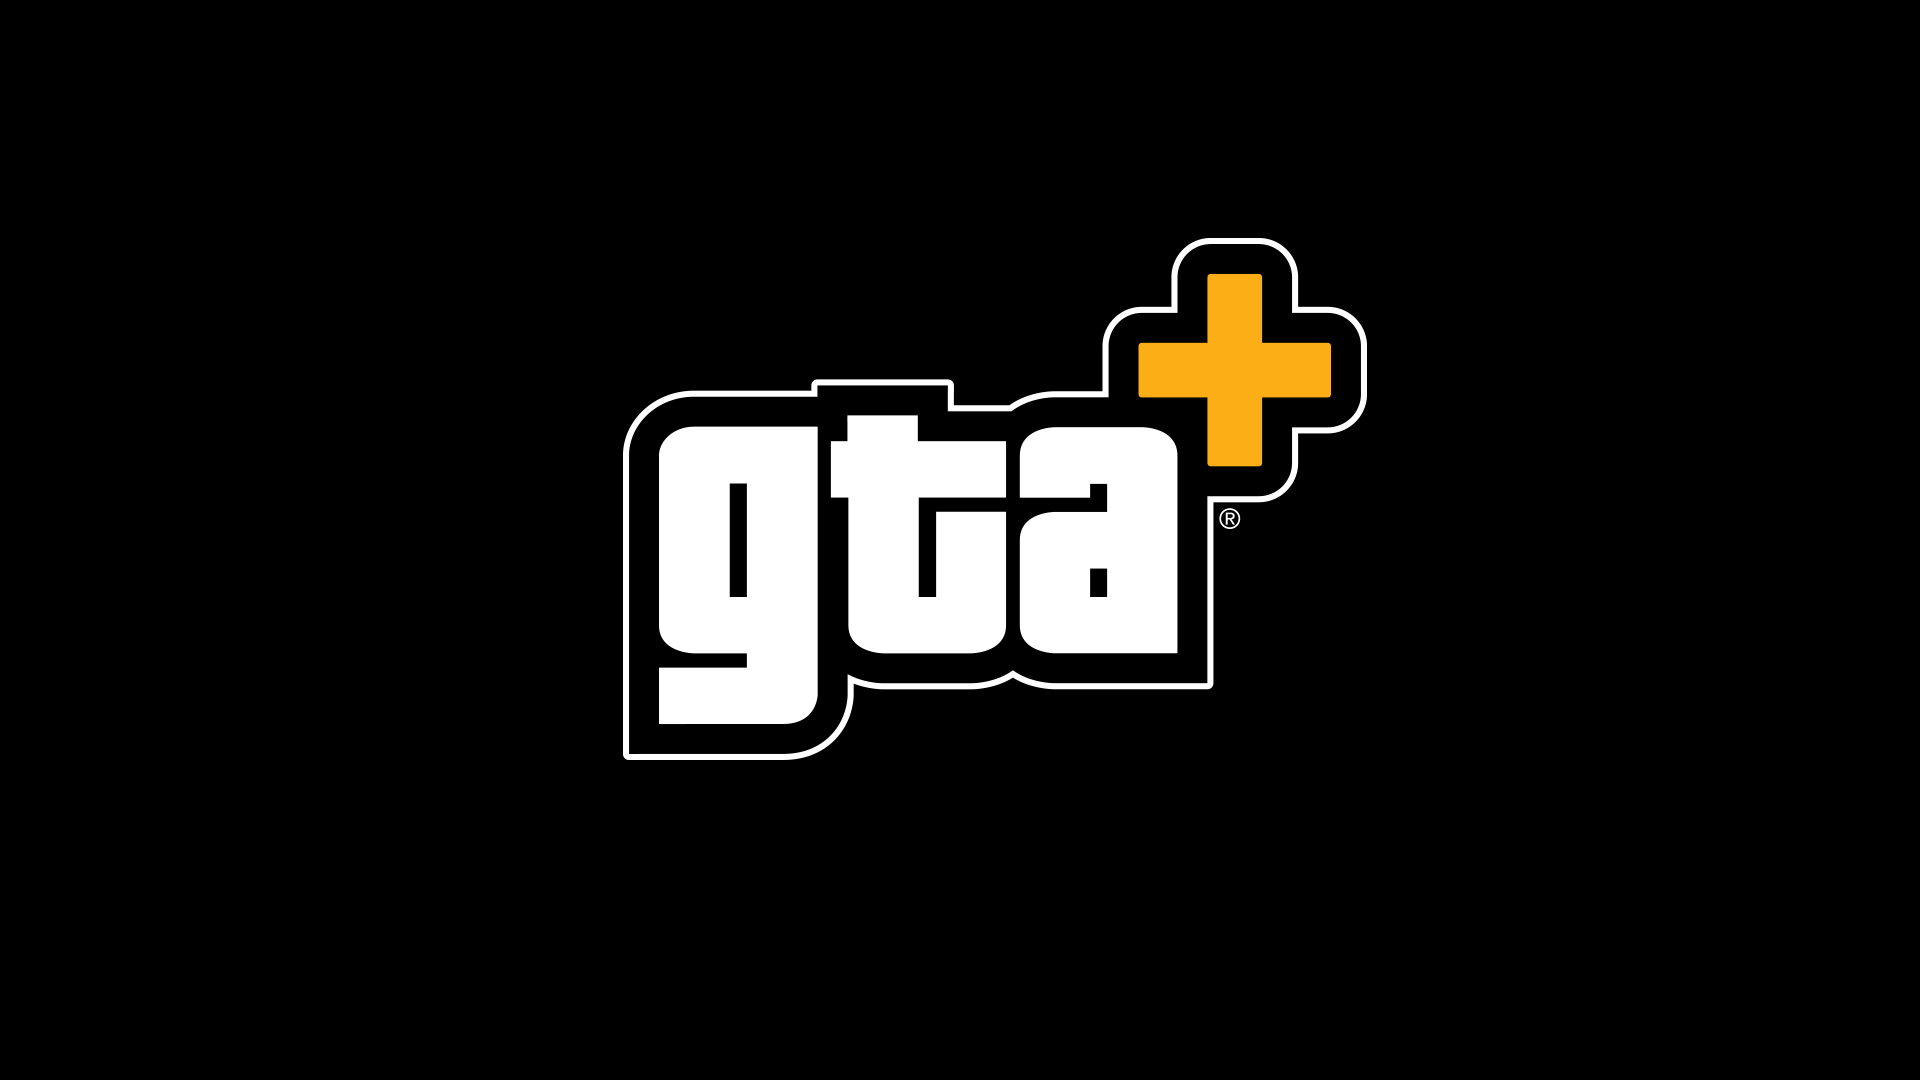 Para obtener más información sobre las últimas ventajas de GTA+, visite https://rockstargames.com/gtaplus